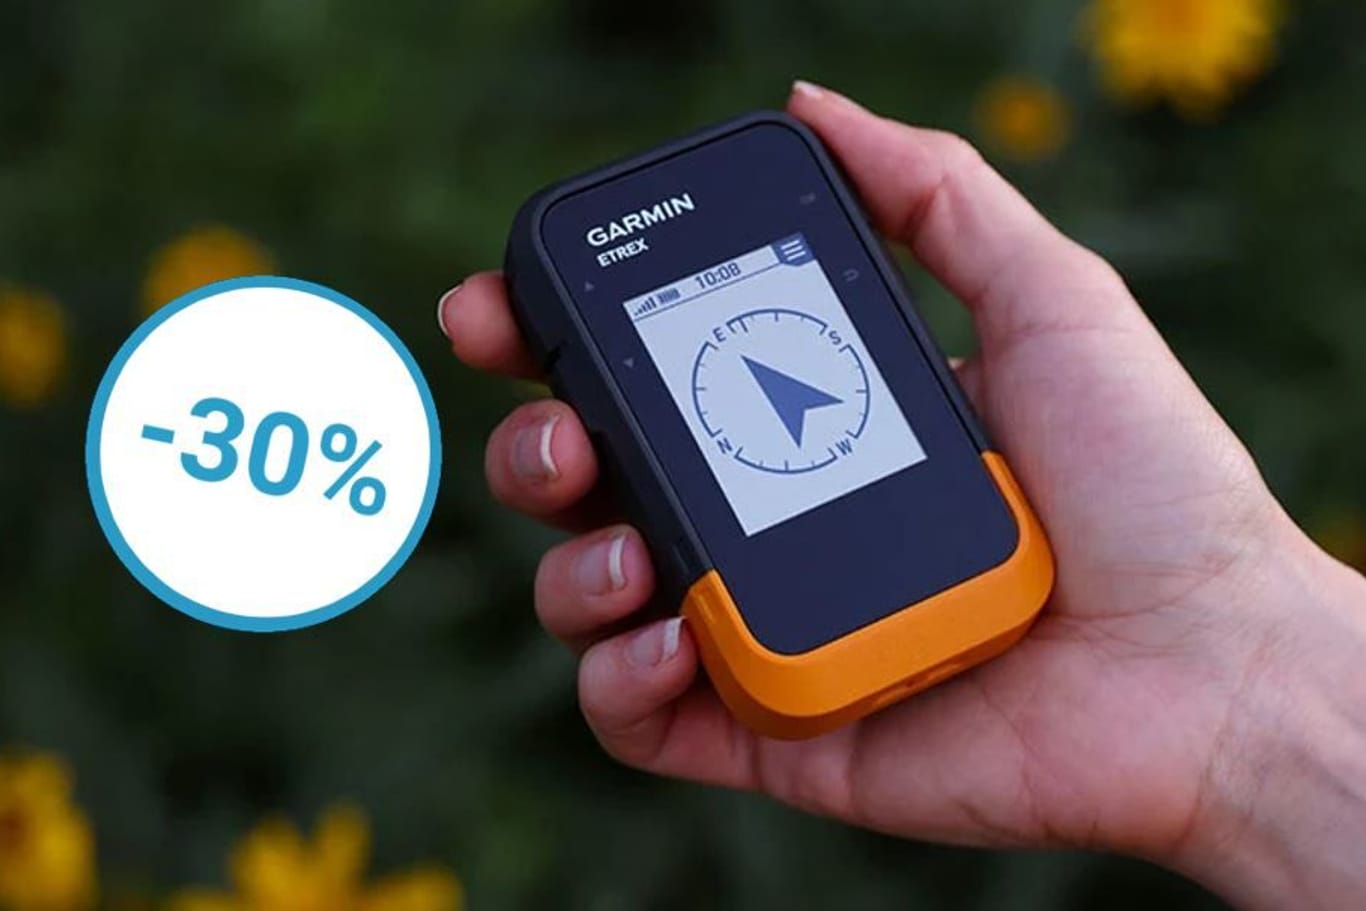 Preisrekord bei Amazon: Das Wander-Navi mit GPS von Garmin war noch nie so günstig wie jetzt.